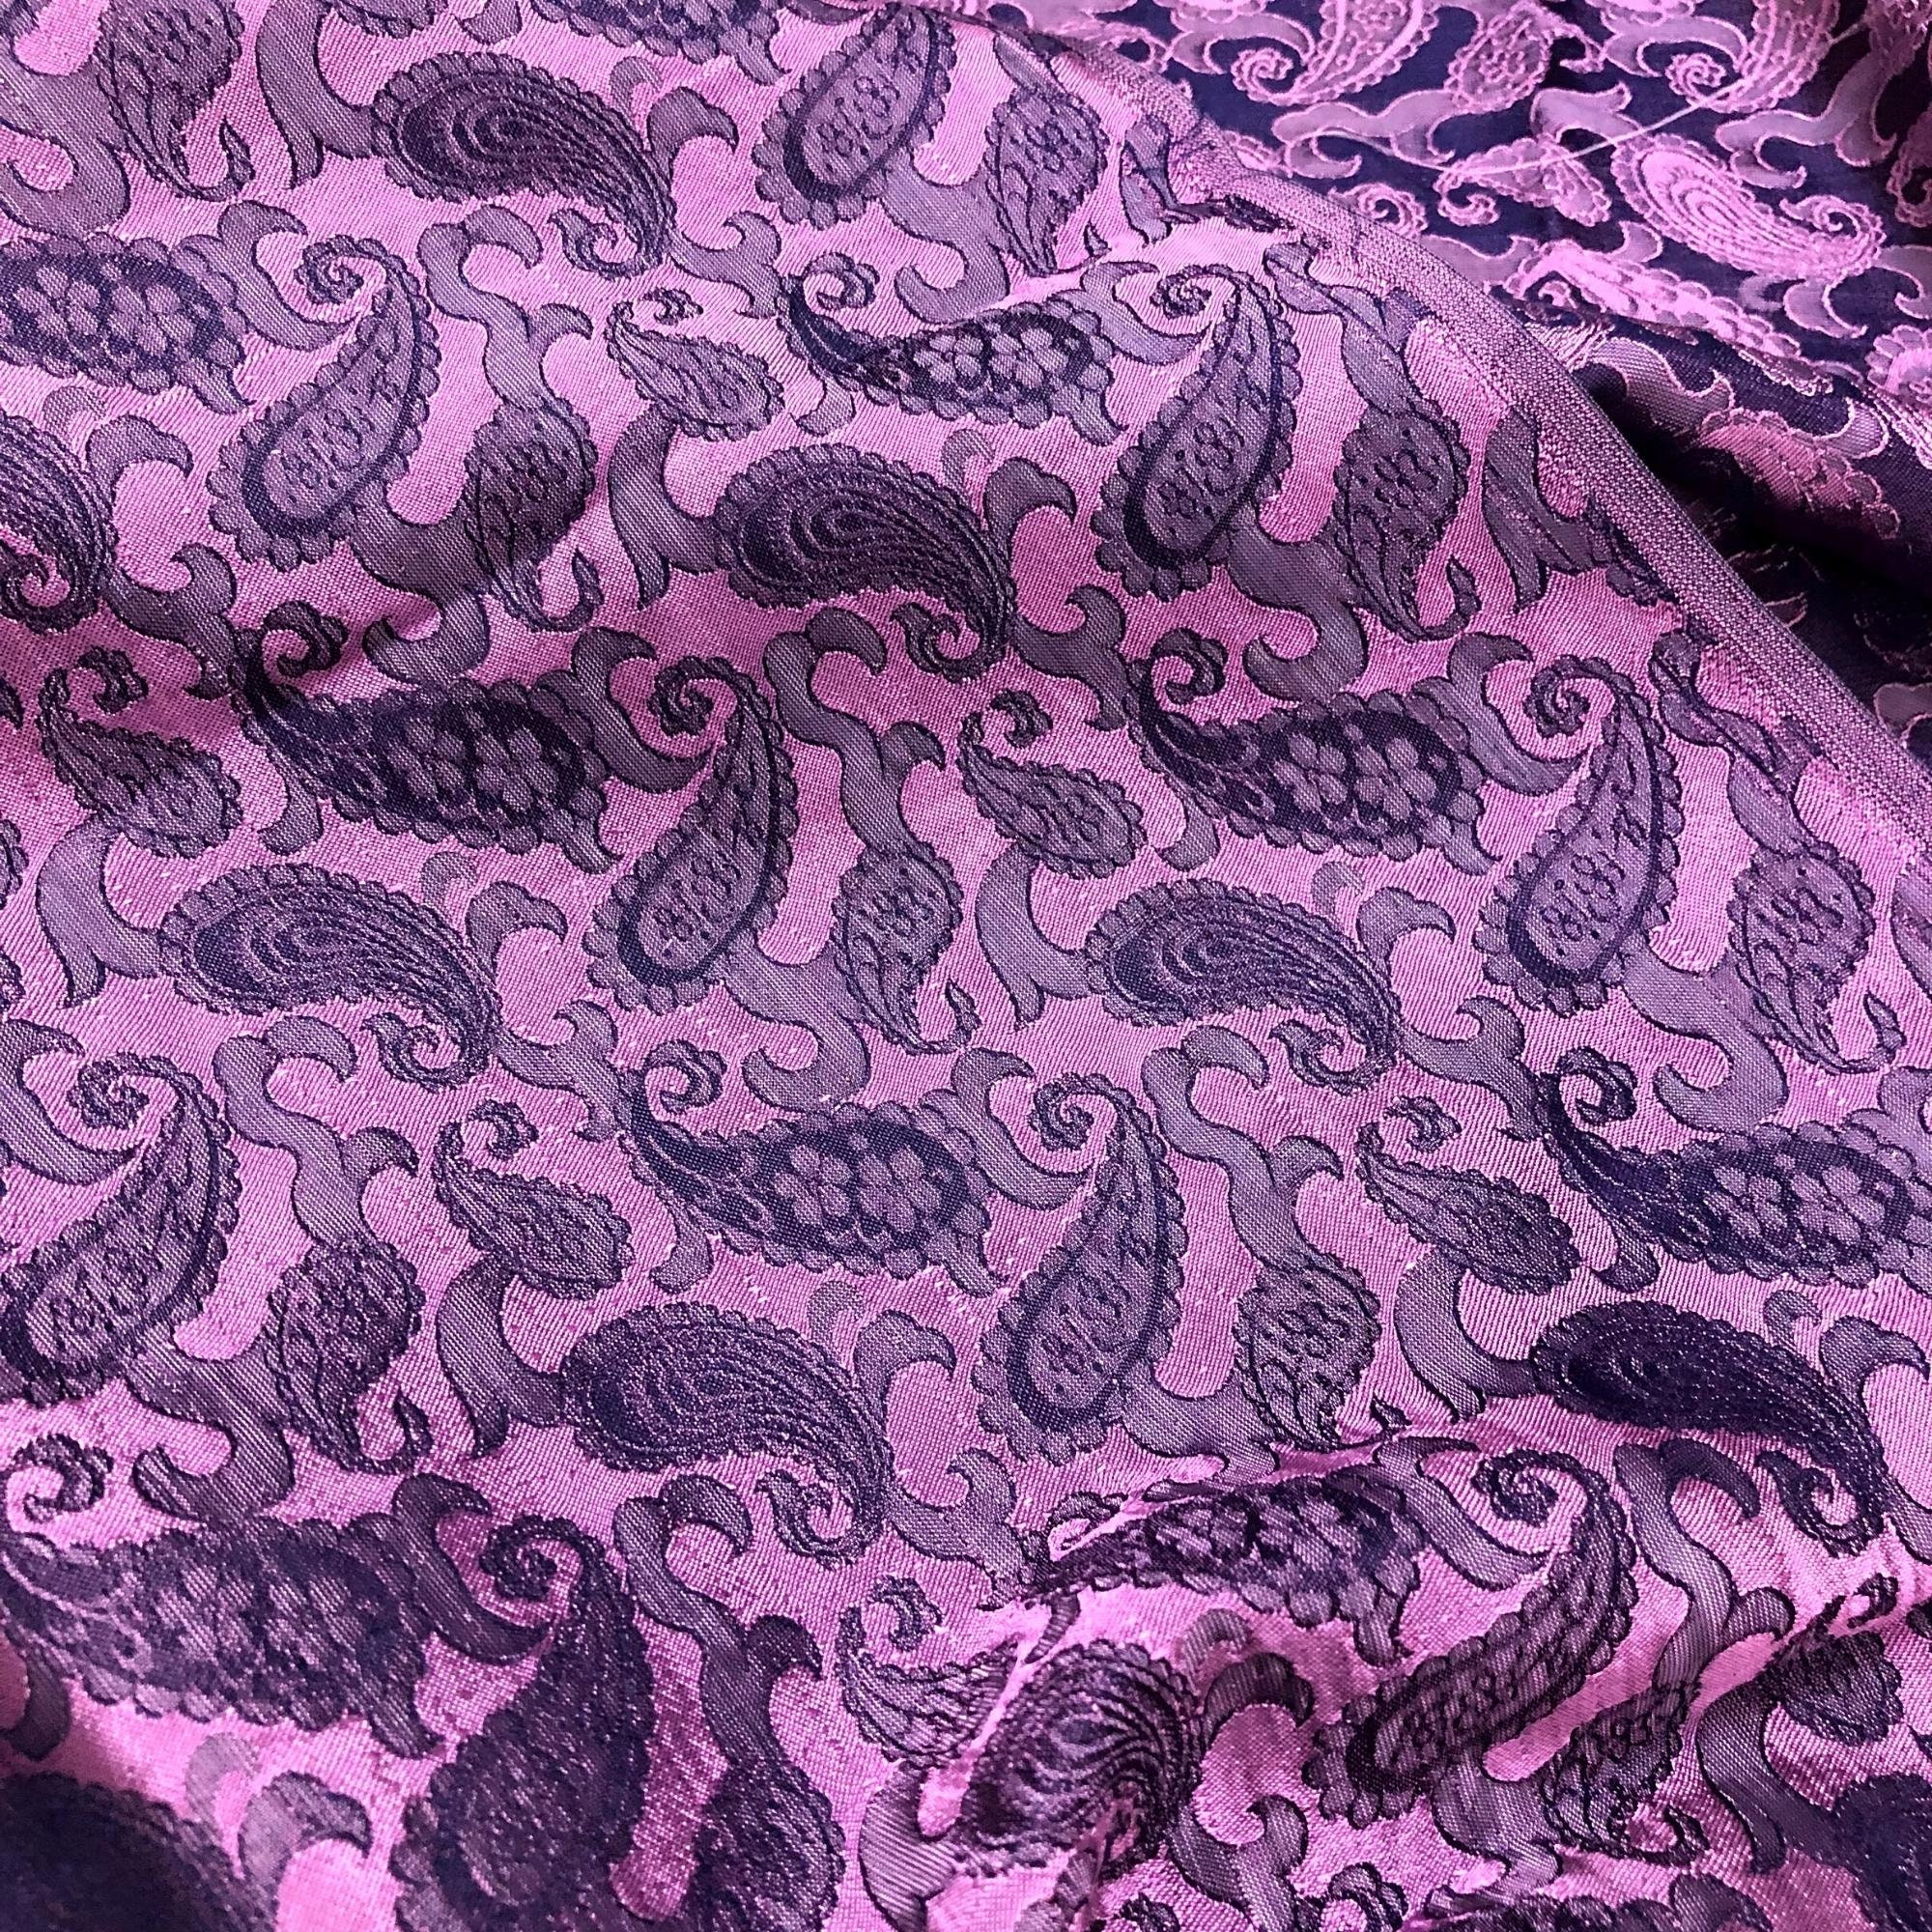 Vải Lụa Tơ Tằm Palacesilk đuôi công màu tím may áo dài và các loại váy áo, khổ rộng 90, dệt thủ công, bền đẹp & thoáng mát